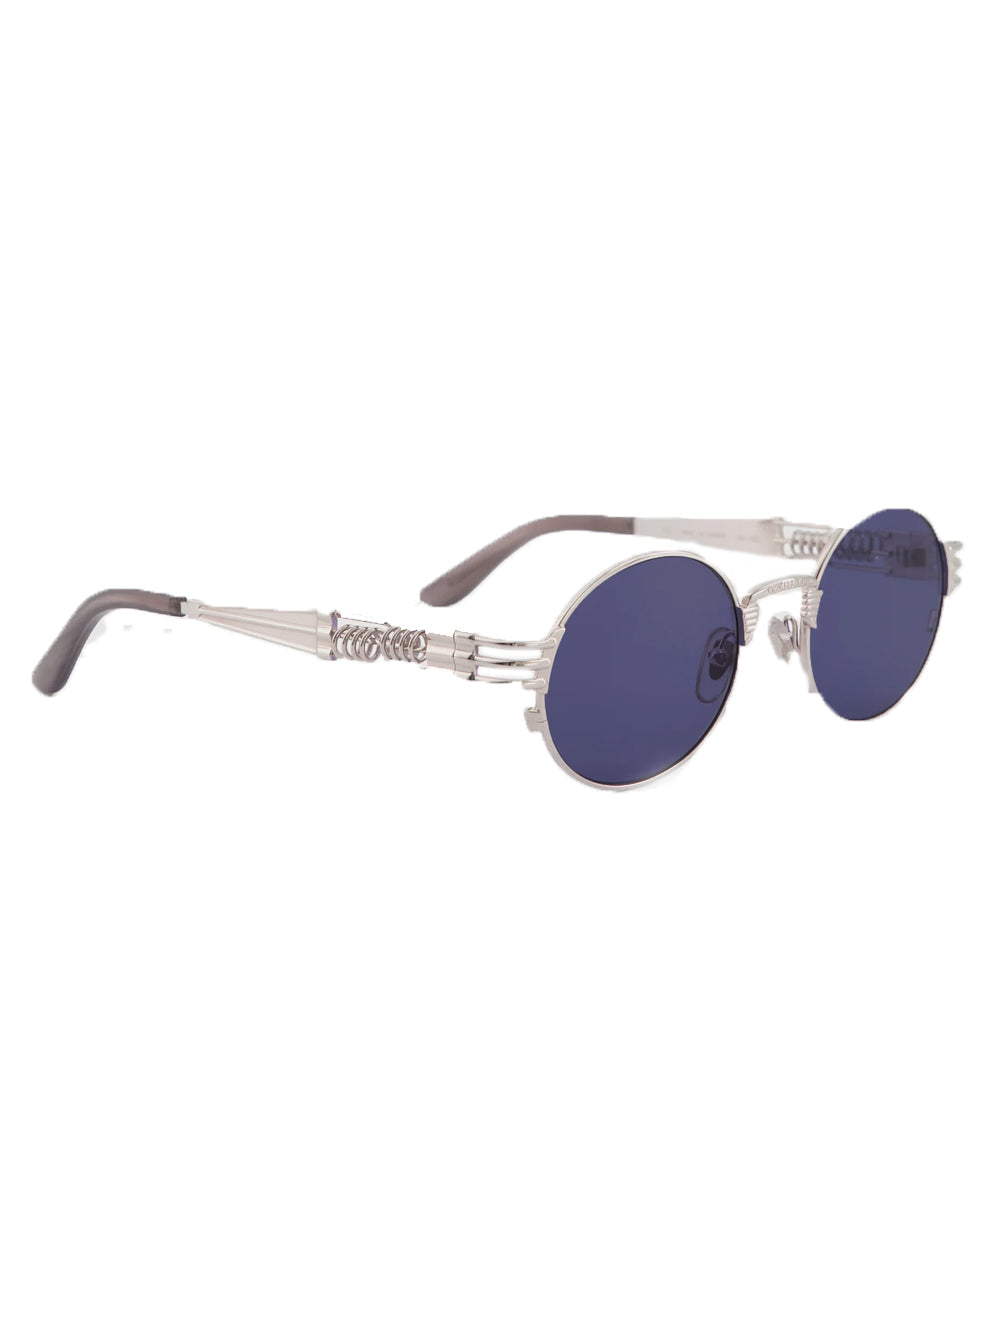 JEAN PAUL GAULTIER UNISEX The 56-6106 Sunglasses Silver - MAISONDEFASHION.COM